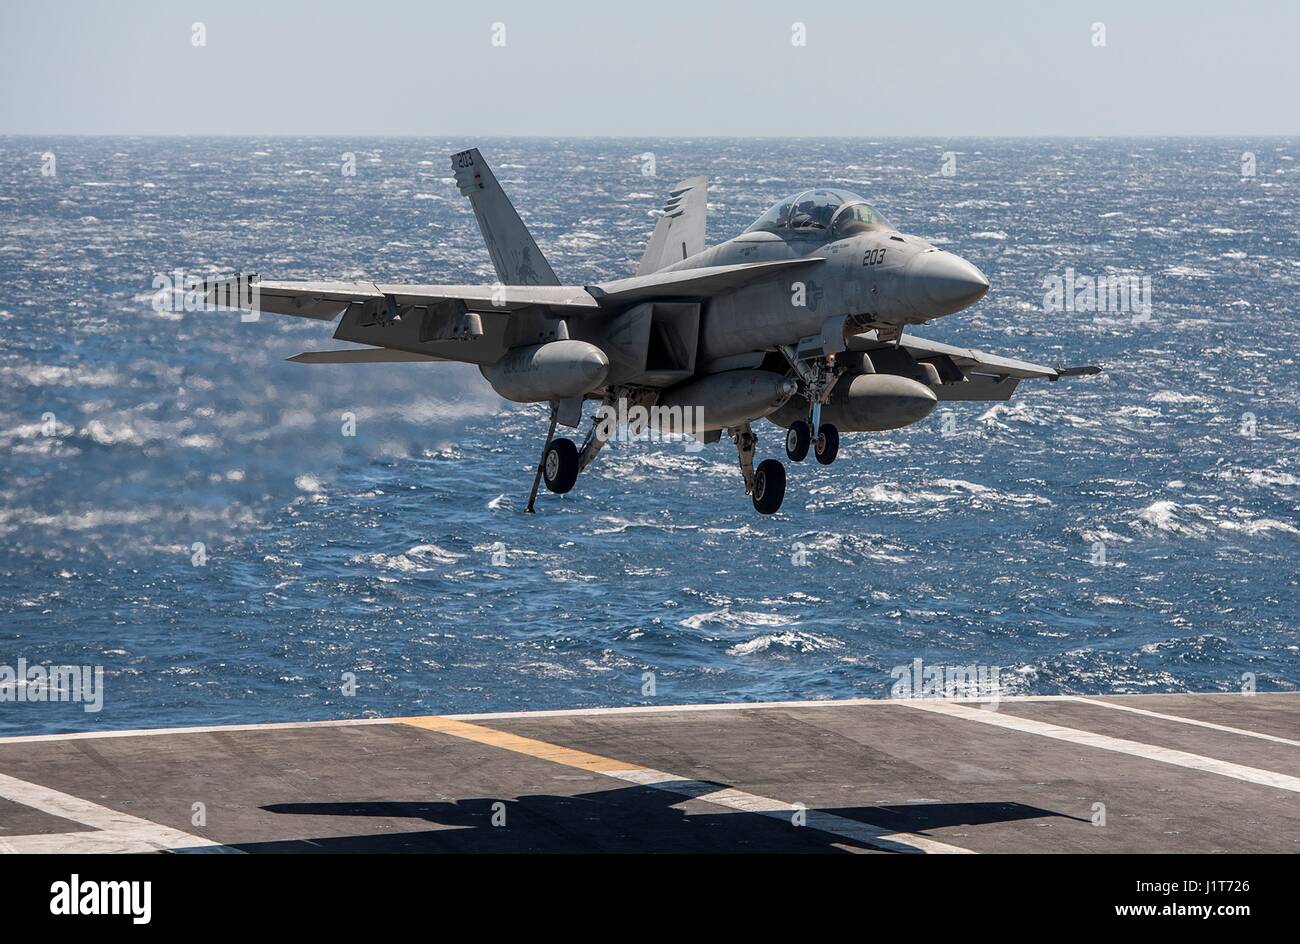 La Marina estadounidense F/A-18F Super Hornet aviones de combate enfoques para aterrizar en la cubierta de vuelo de la clase Nimitz portaaviones USS George H.W. Bush durante operaciones contra el Estado Islámico en funcionamiento inherente resolver el 4 de abril de 2017 en el Golfo Arábigo. Foto de stock